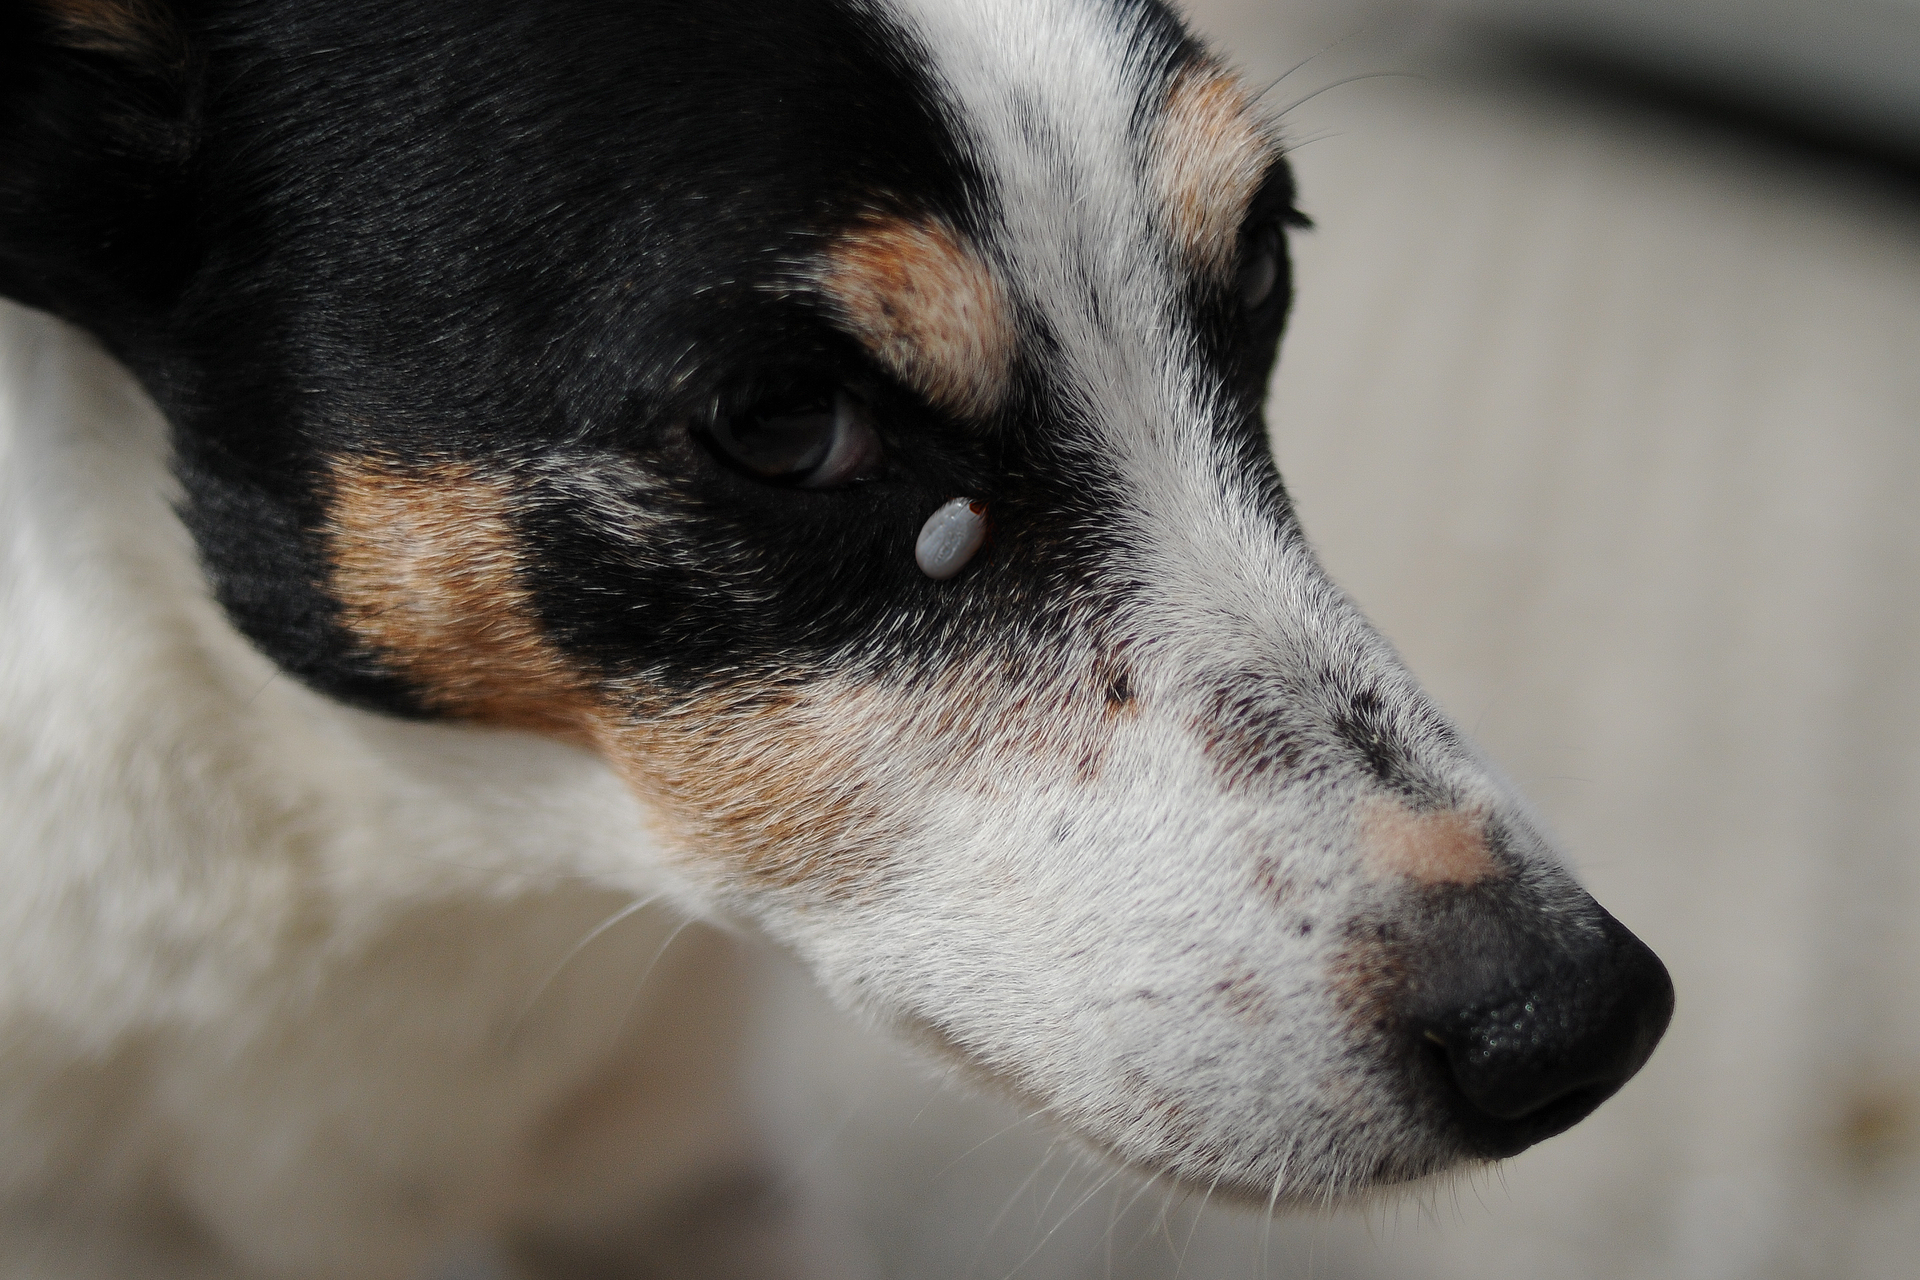 Fotografia przestawia zbliżenie biało – brązowego pyska psa. Pod czarnym okiem psa wisi przyczepiony do skóry szary, owalny kleszcz.